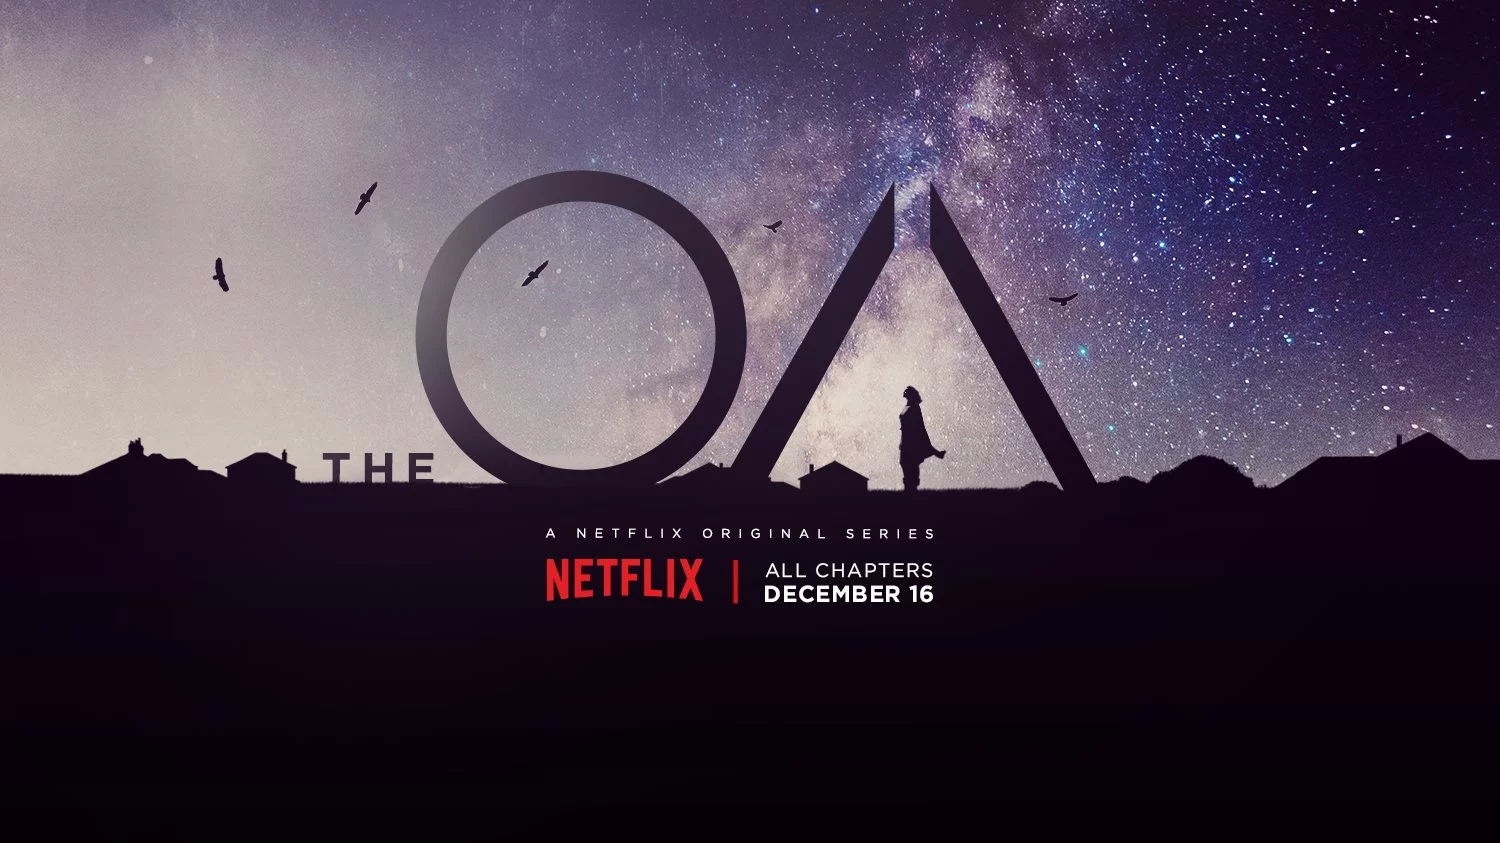 The OA Netflix